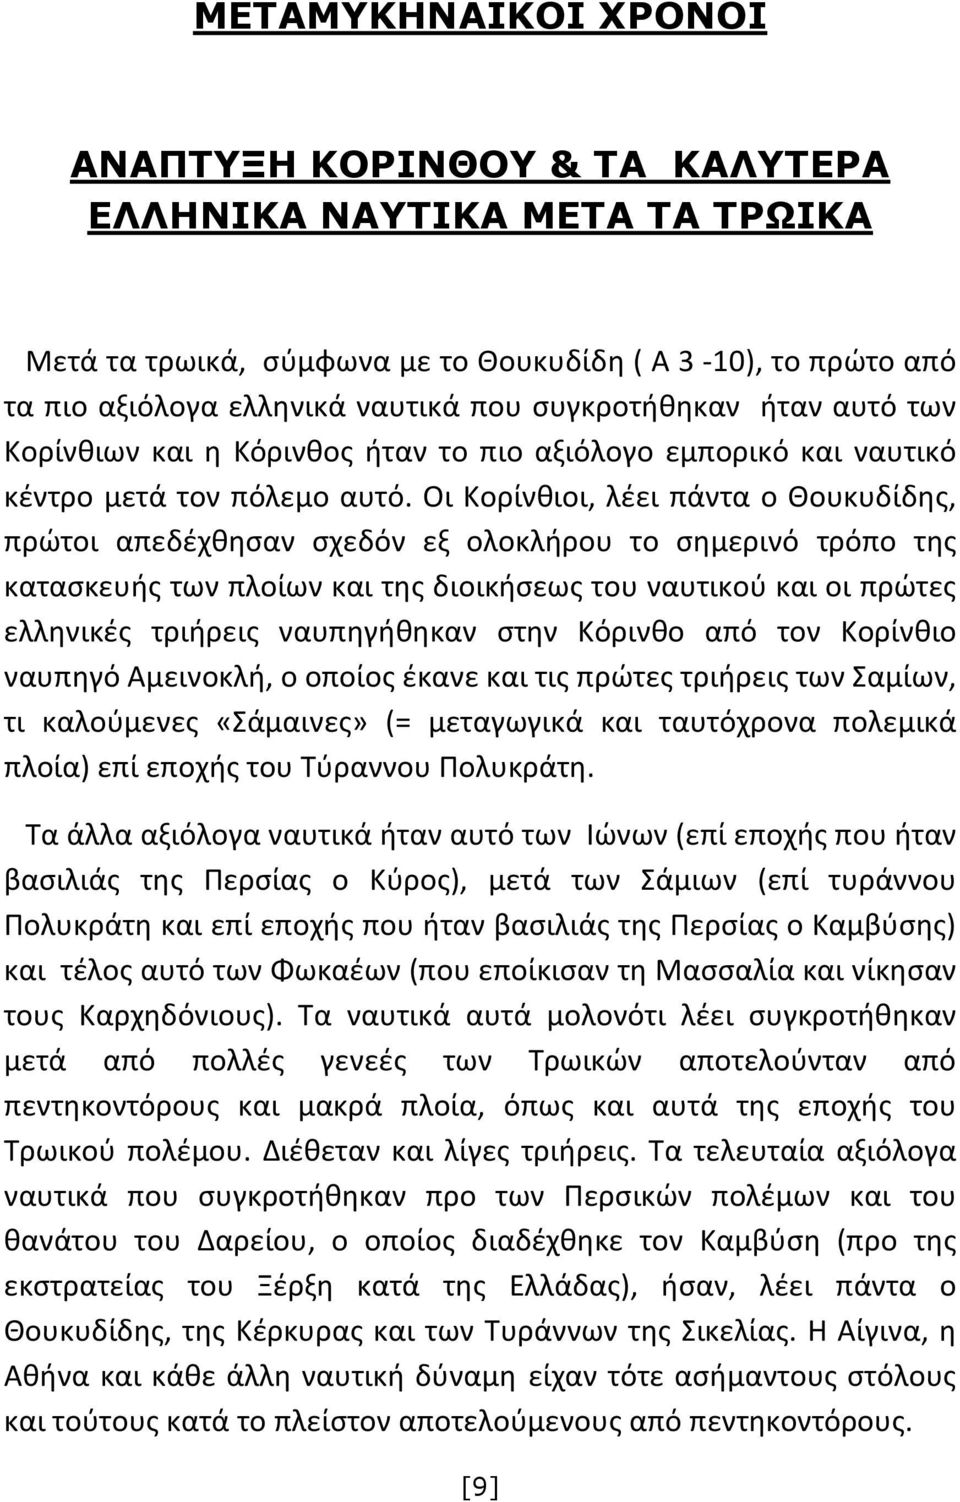 Οι Κορίνθιοι, λέει πάντα ο Θουκυδίδης, πρώτοι απεδέχθησαν σχεδόν εξ ολοκλήρου το σημερινό τρόπο της κατασκευής των πλοίων και της διοικήσεως του ναυτικού και οι πρώτες ελληνικές τριήρεις ναυπηγήθηκαν